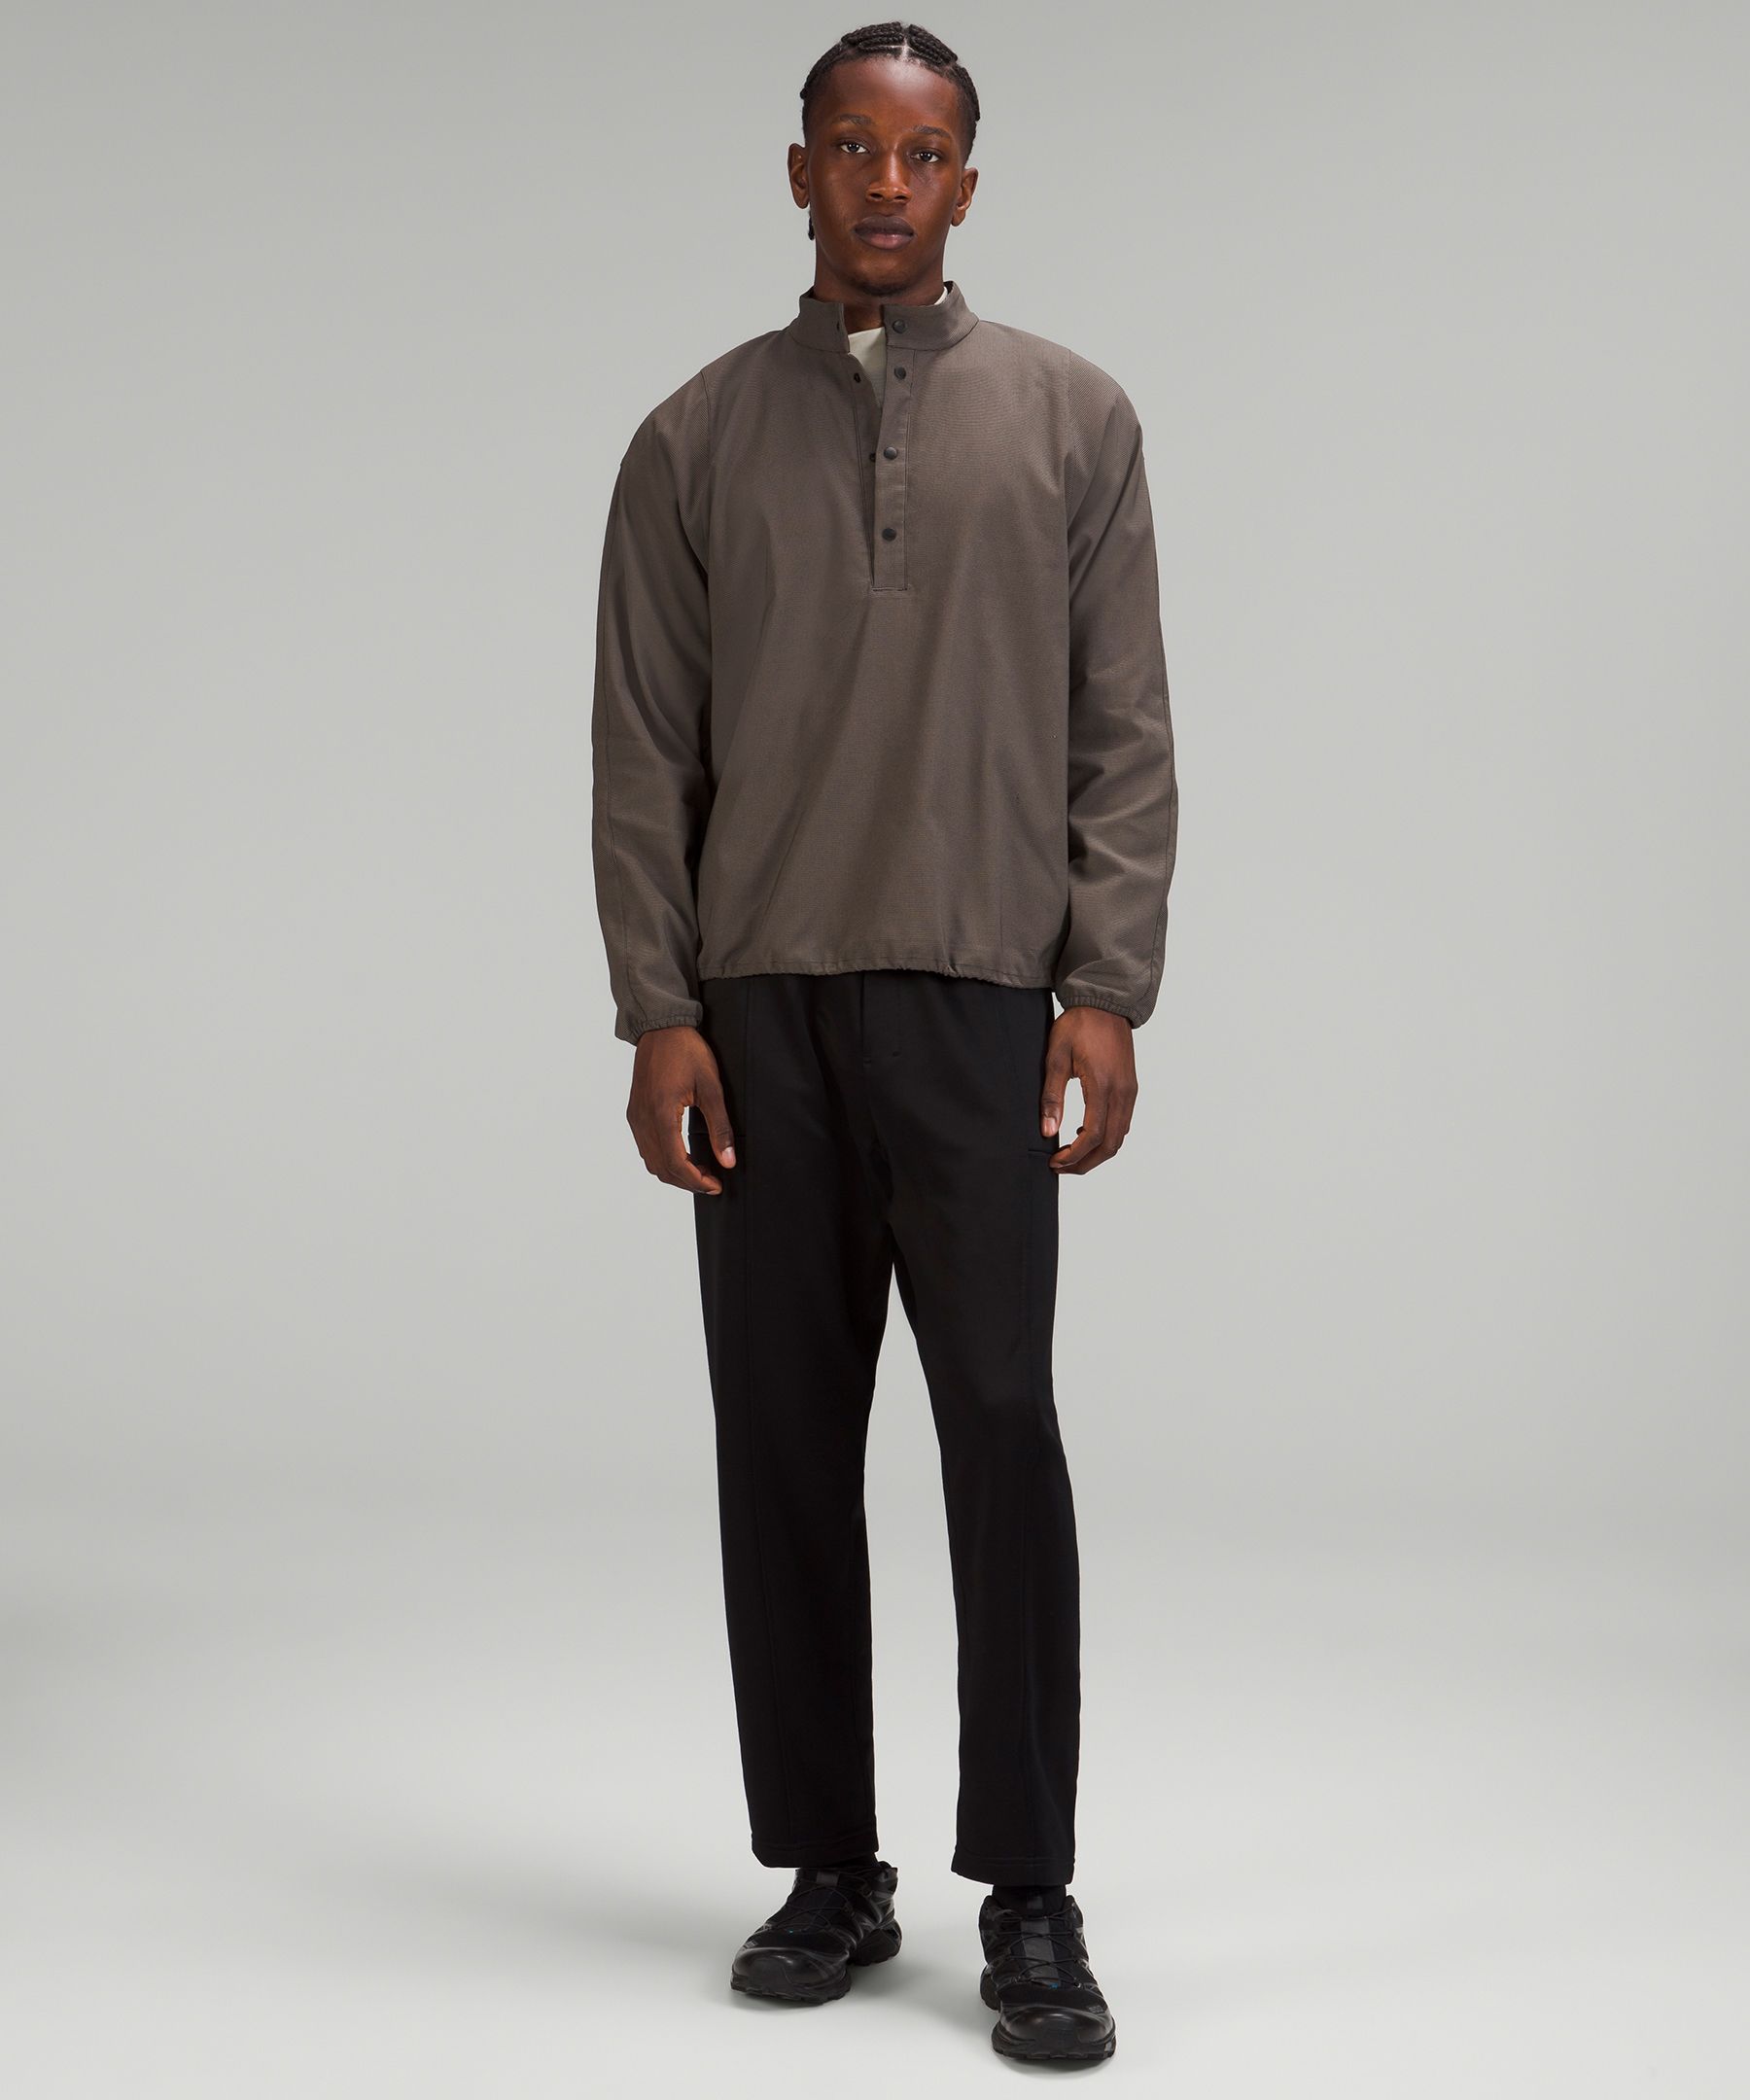 lululemon lab Woven Long-Sleeve Henley, Men's Hoodies & Sweatshirts